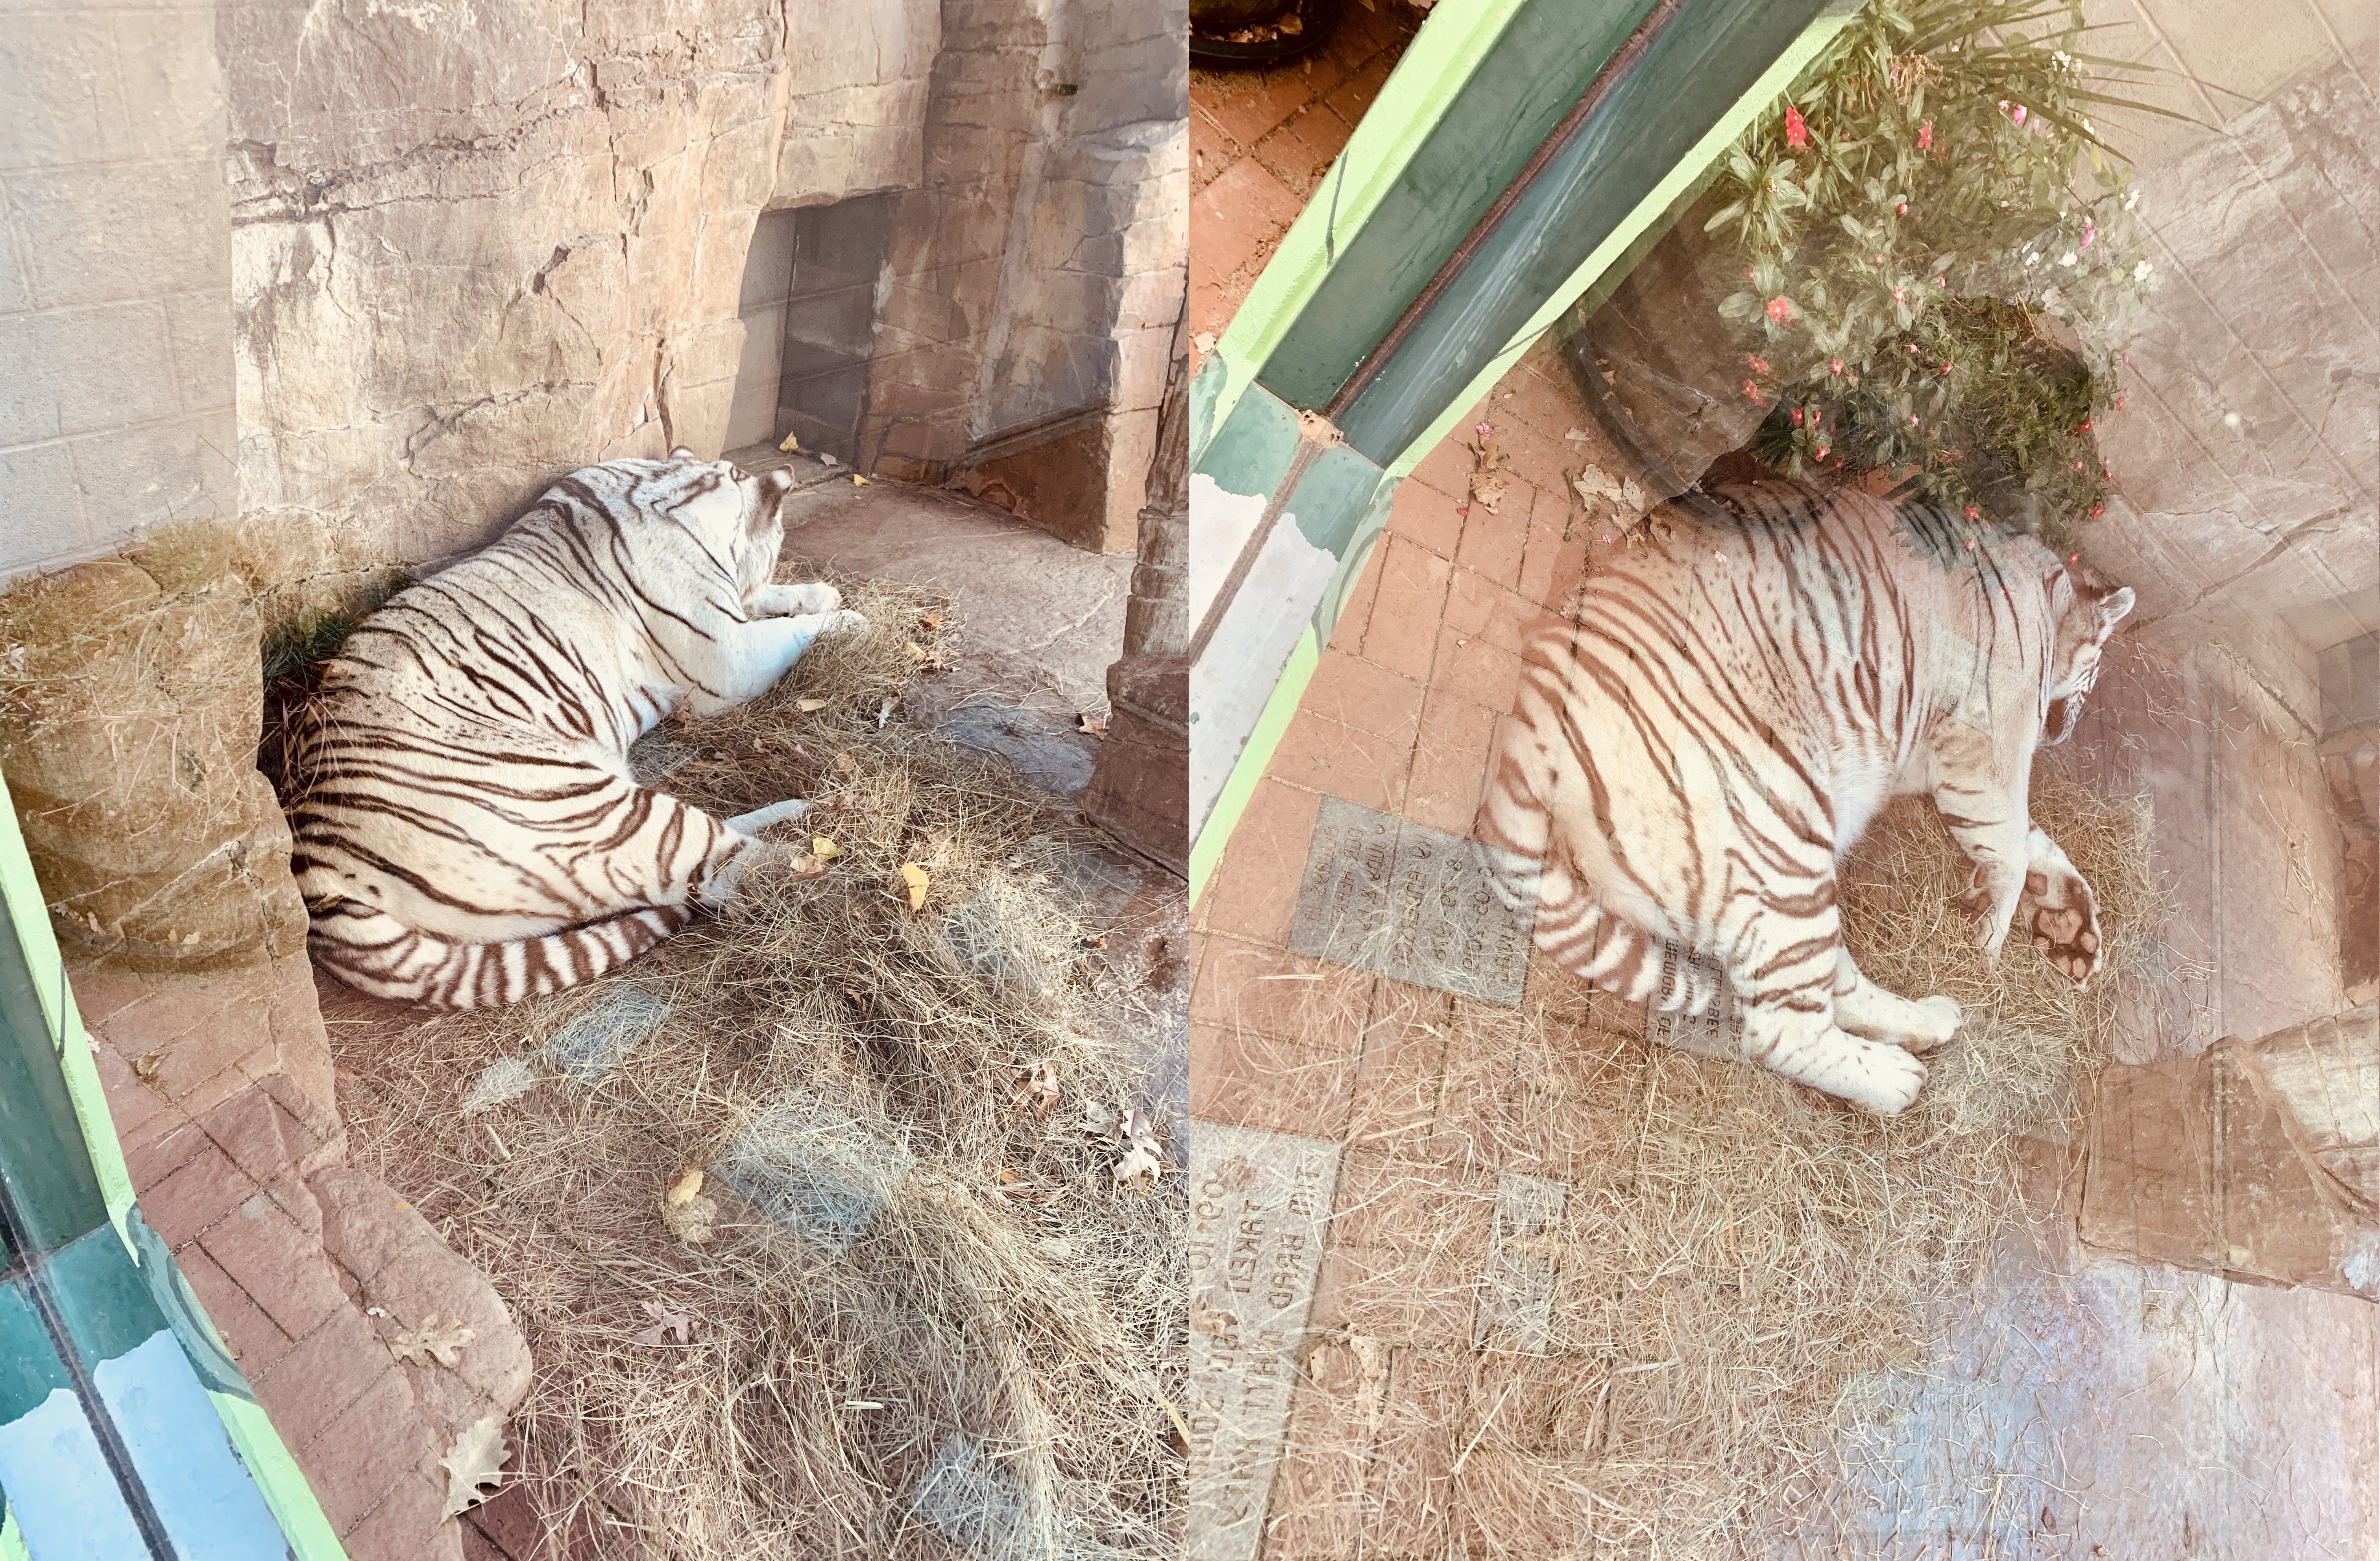 왼쪽-흰색-줄무늬-호랑이가-자고있는-모습-오른쪽-흰색-줄무늬-호랑이가-자고있는-모습이-보이는-모습